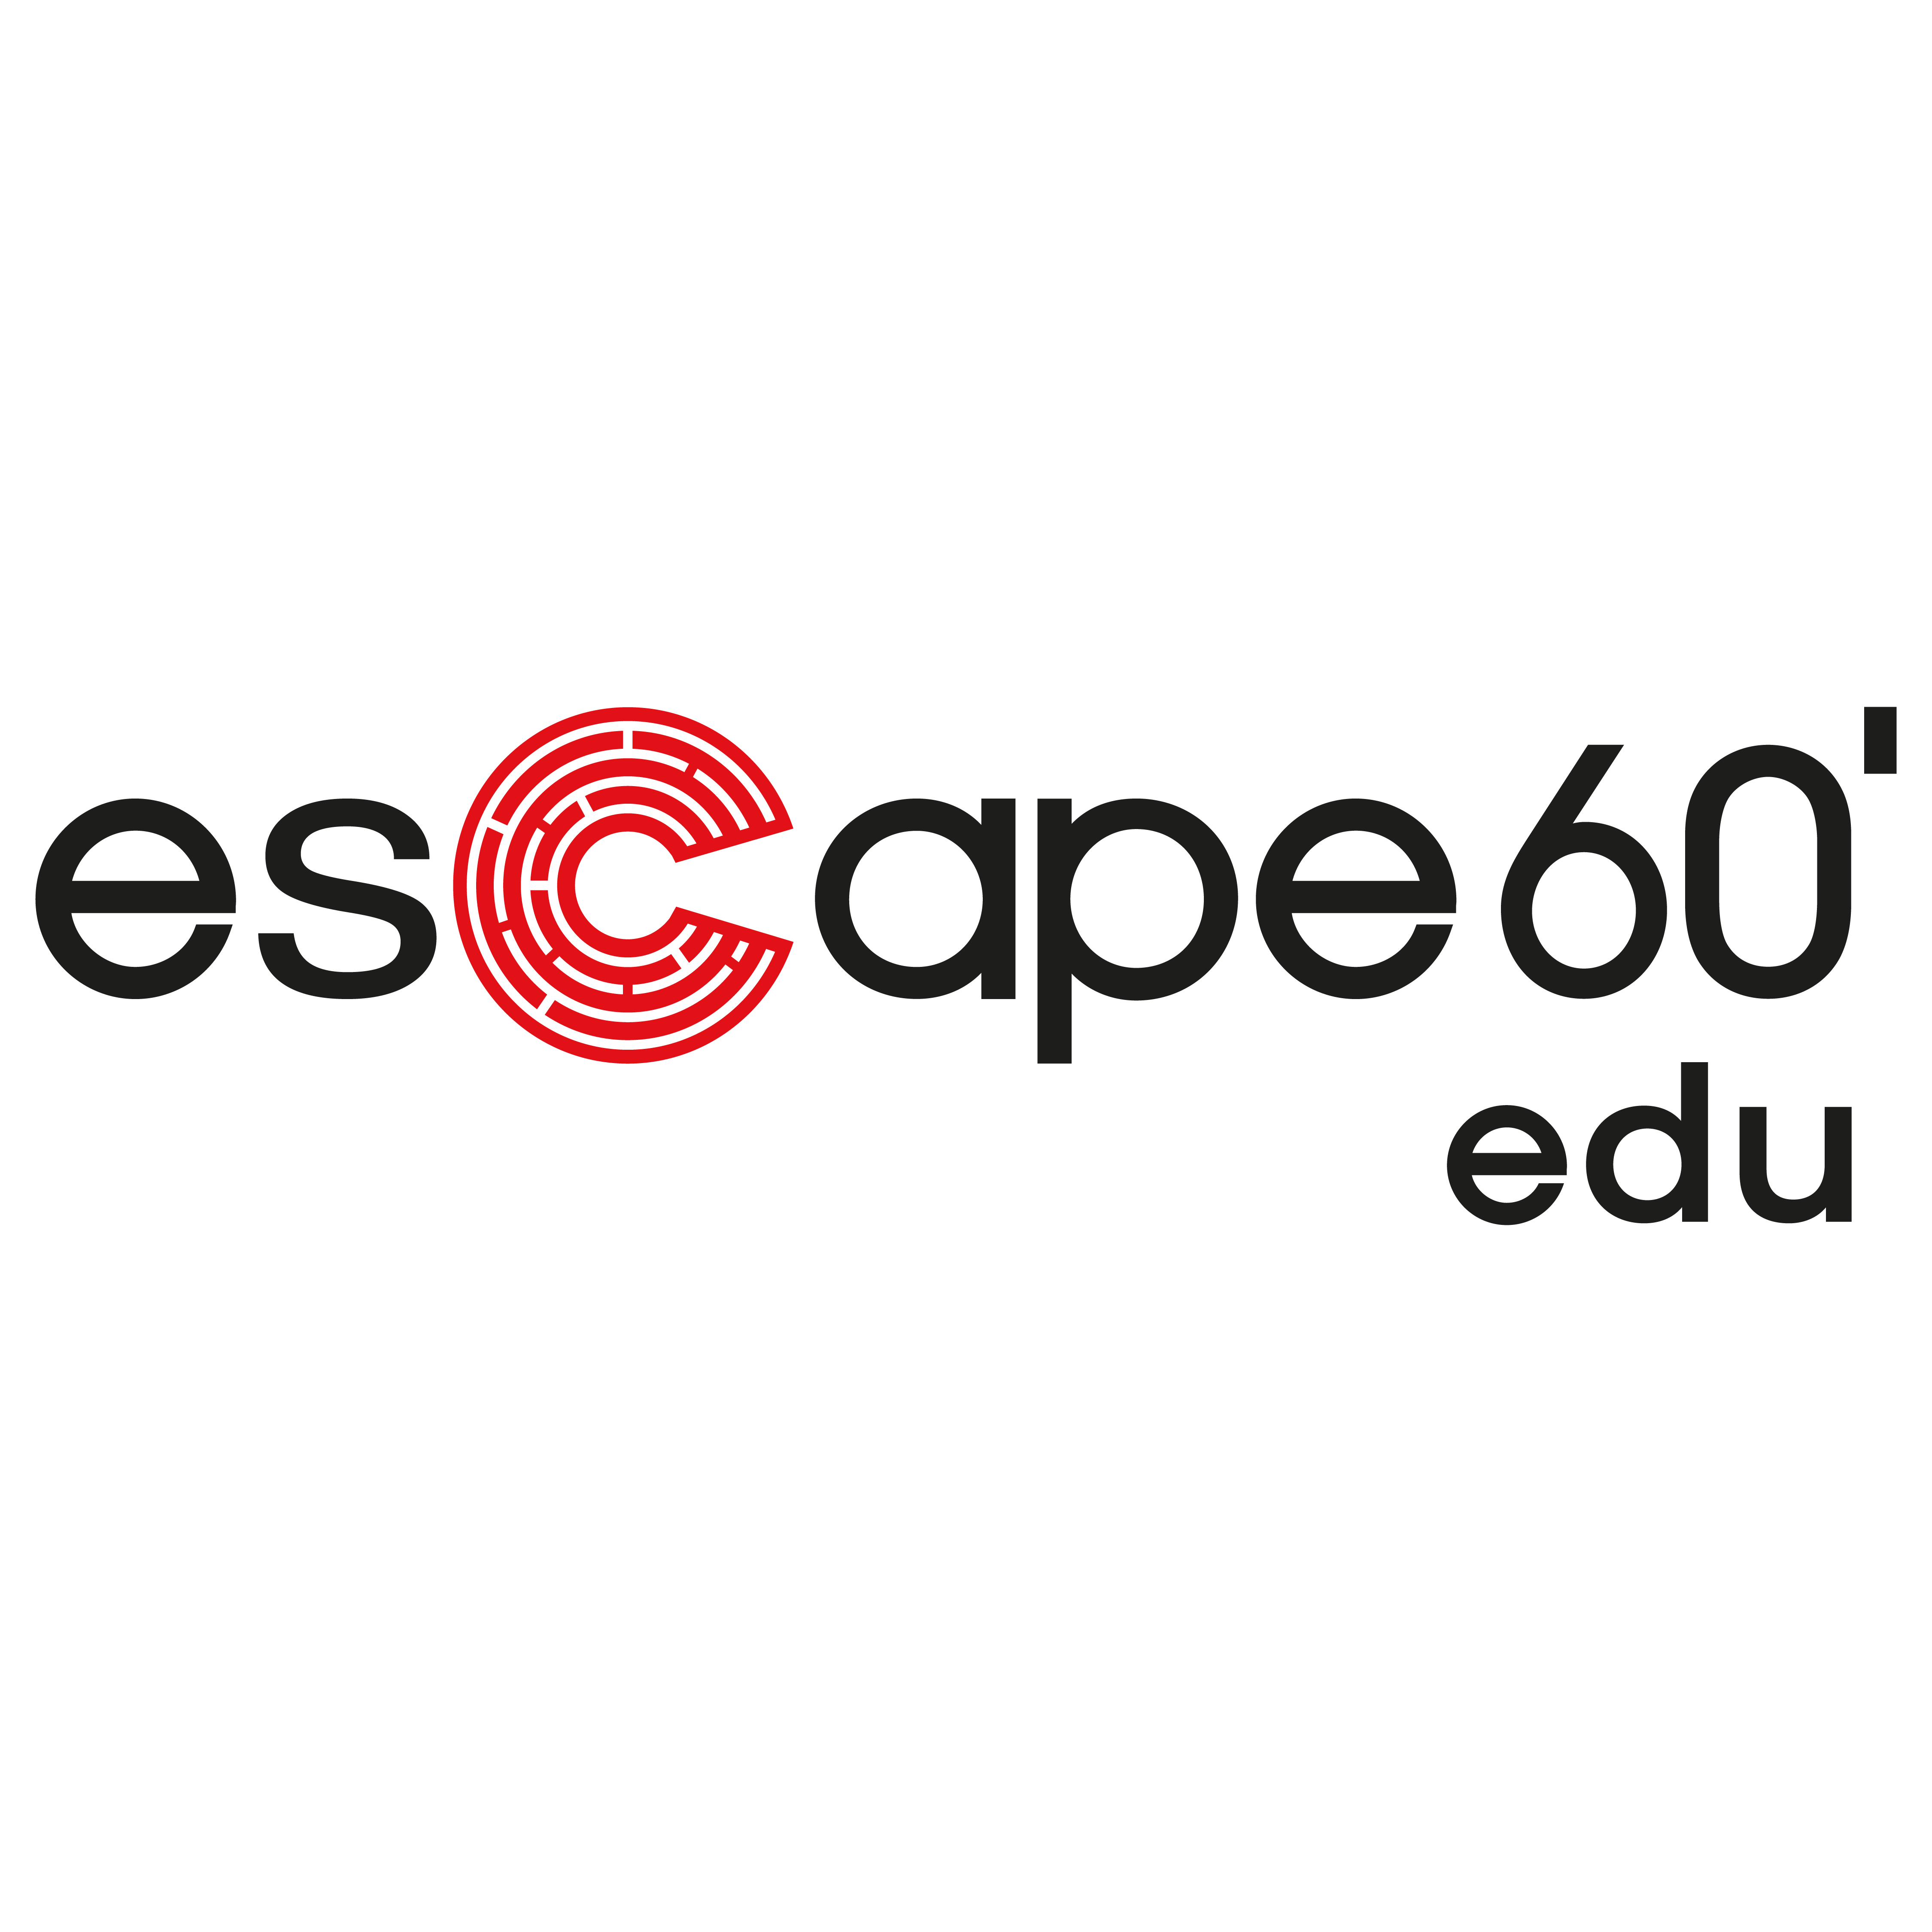 Escape 60